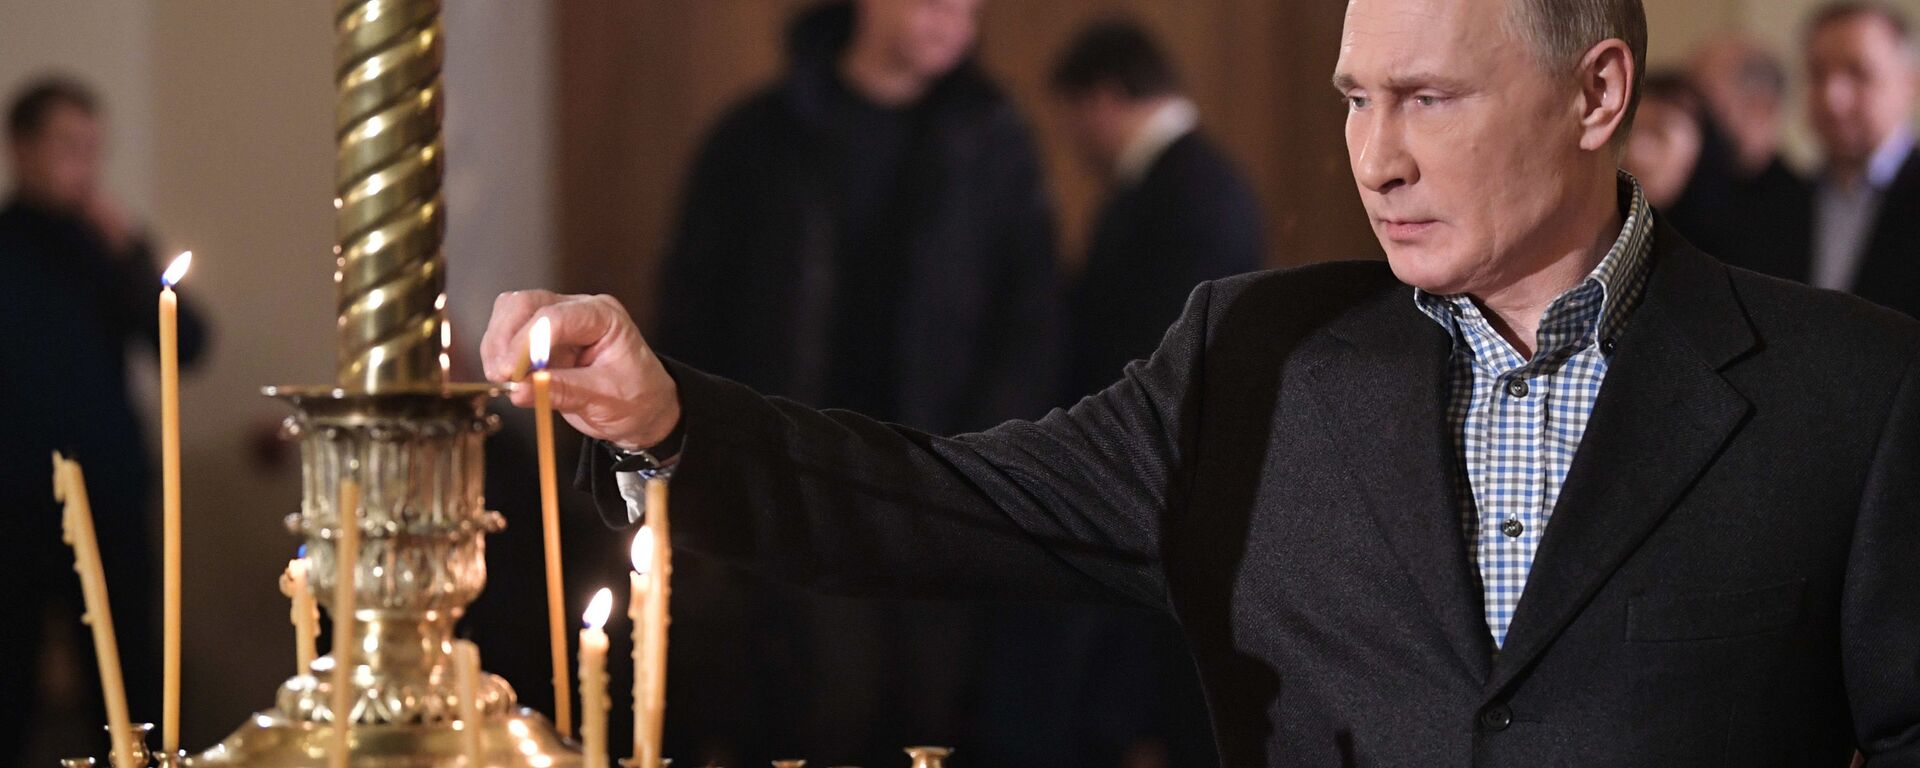 Predsednik Rusije Vladimir Putin pali sveću tokom božićne liturgije u crkvi Svetog Simeona i Ane u Sankt Peterburgu - Sputnik Srbija, 1920, 23.12.2020